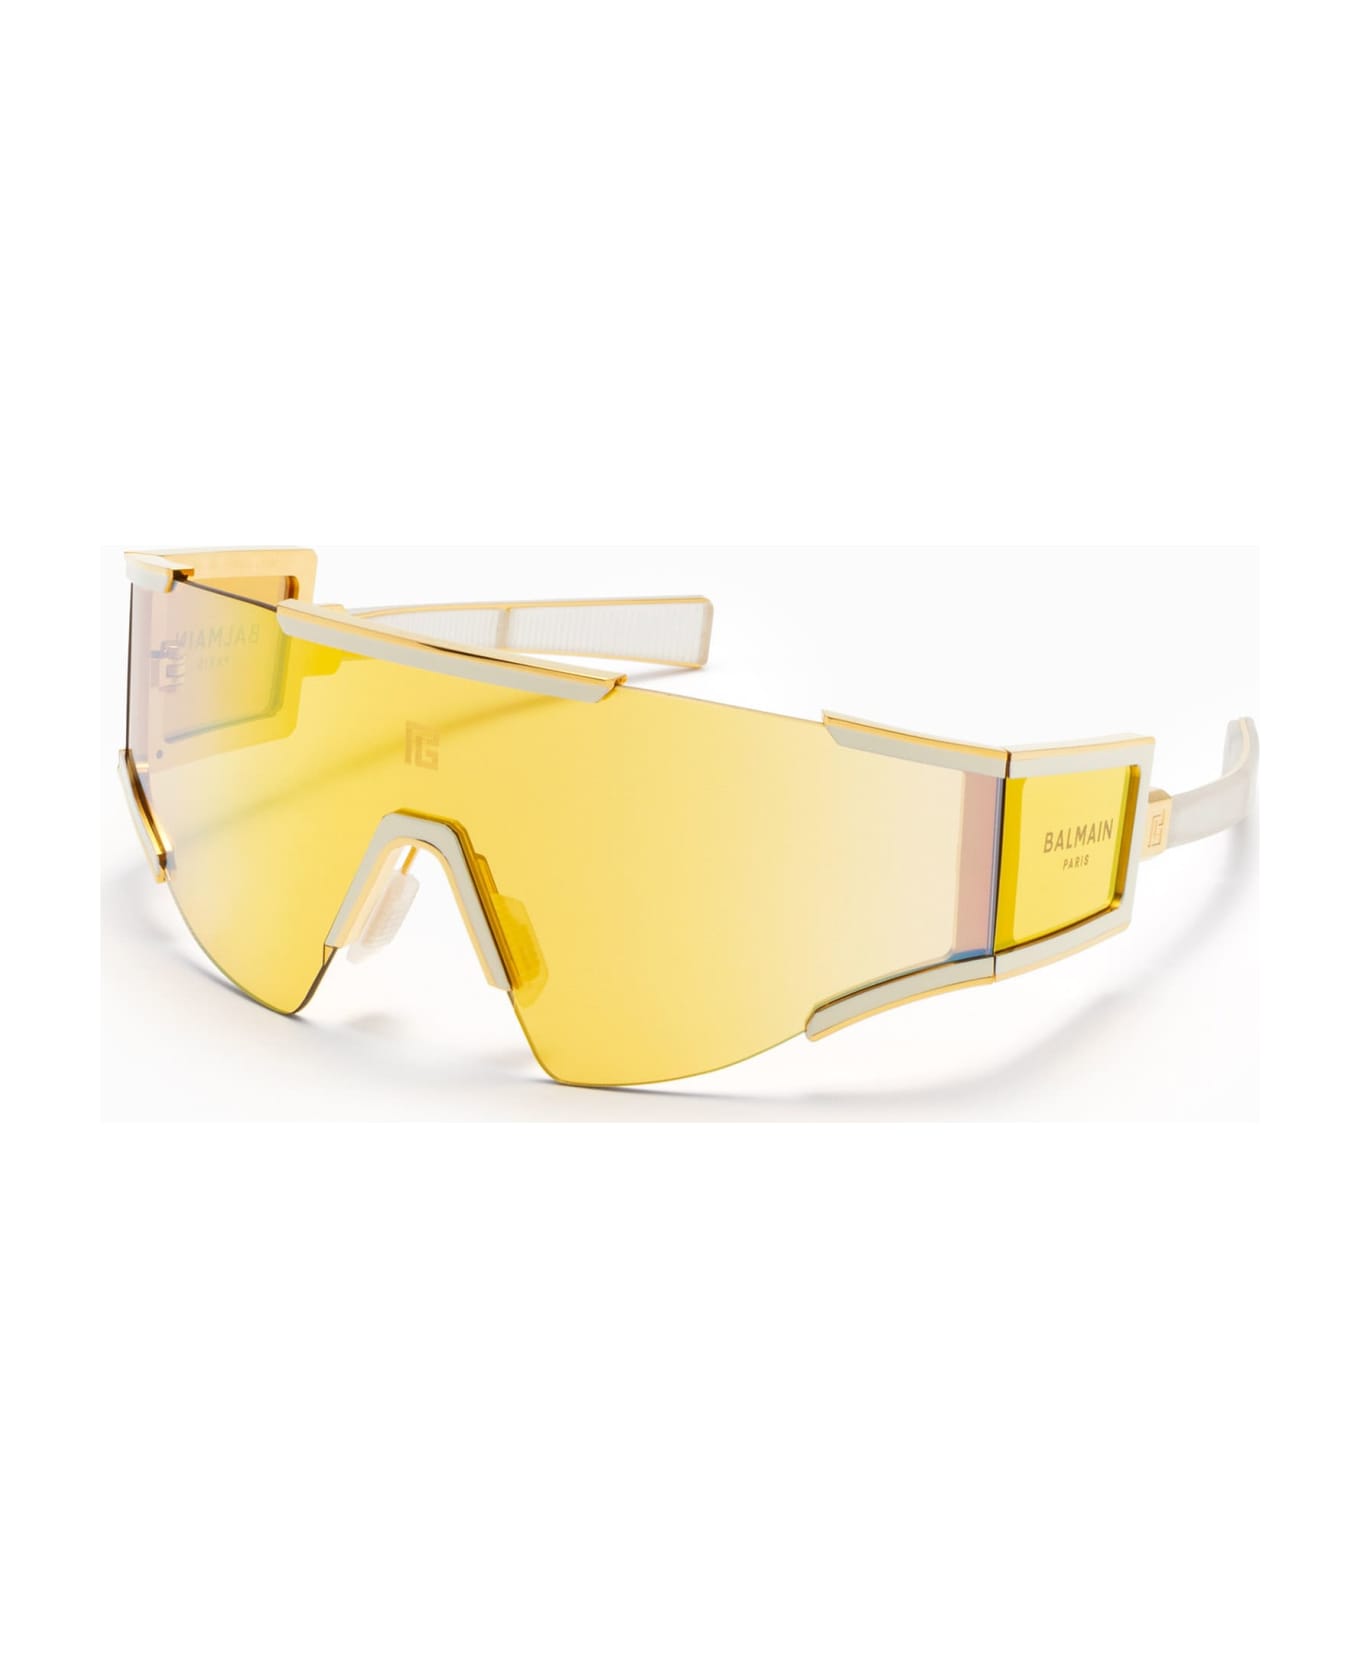 Balmain Fleche - Gold / Bone Sunglasses - Gold/White